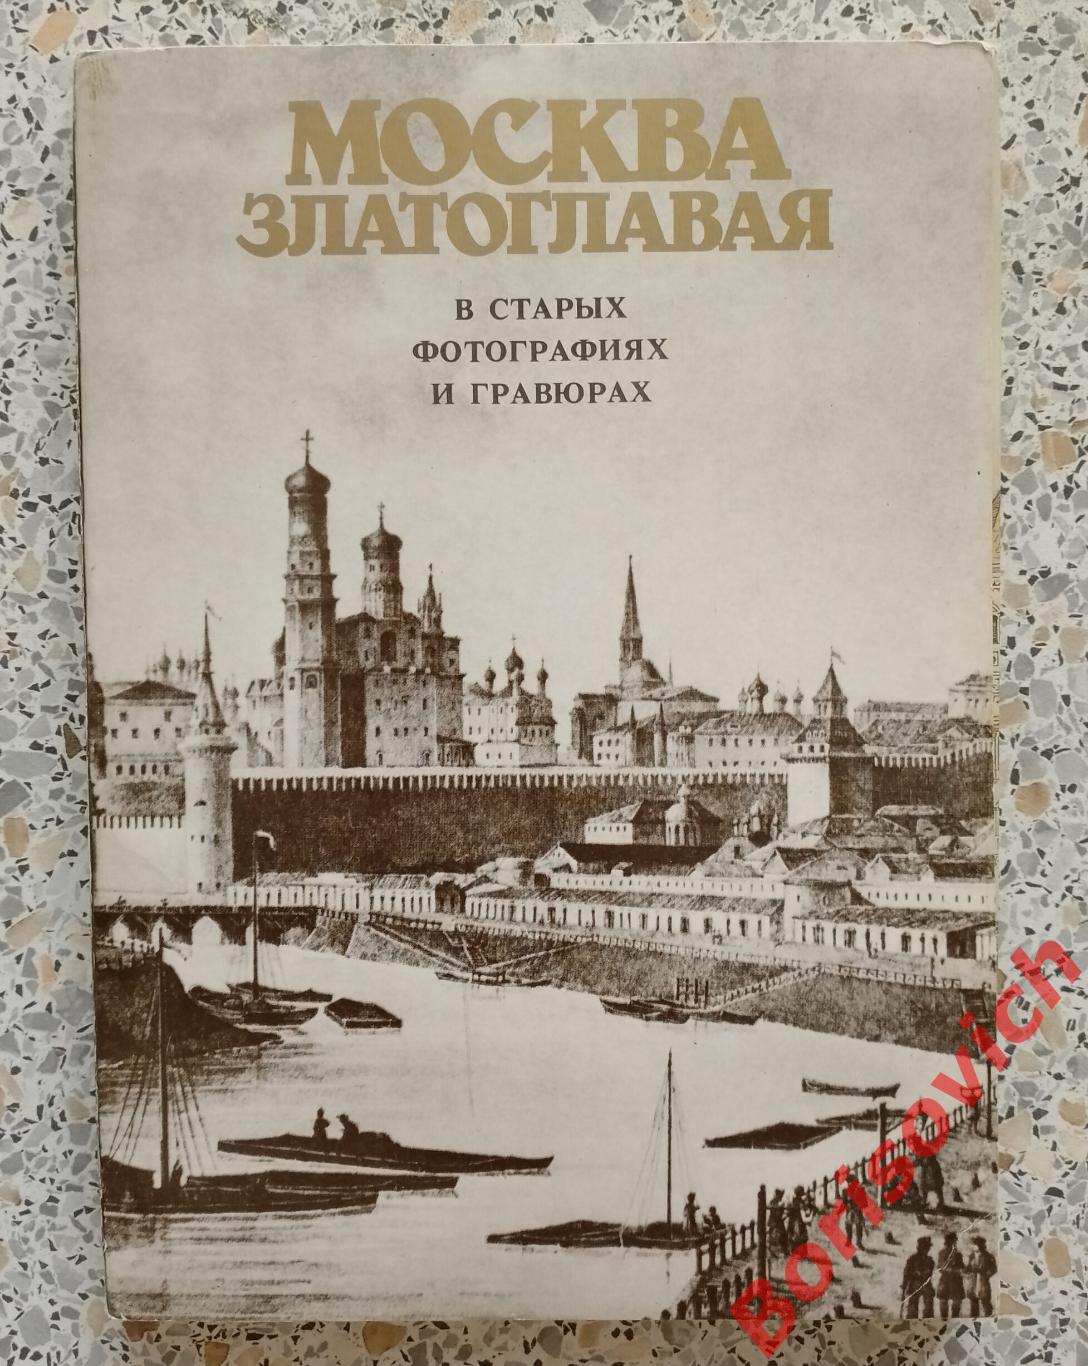 Комплект фоторепродукций Москва златоглавая из 36 штук 1989 г